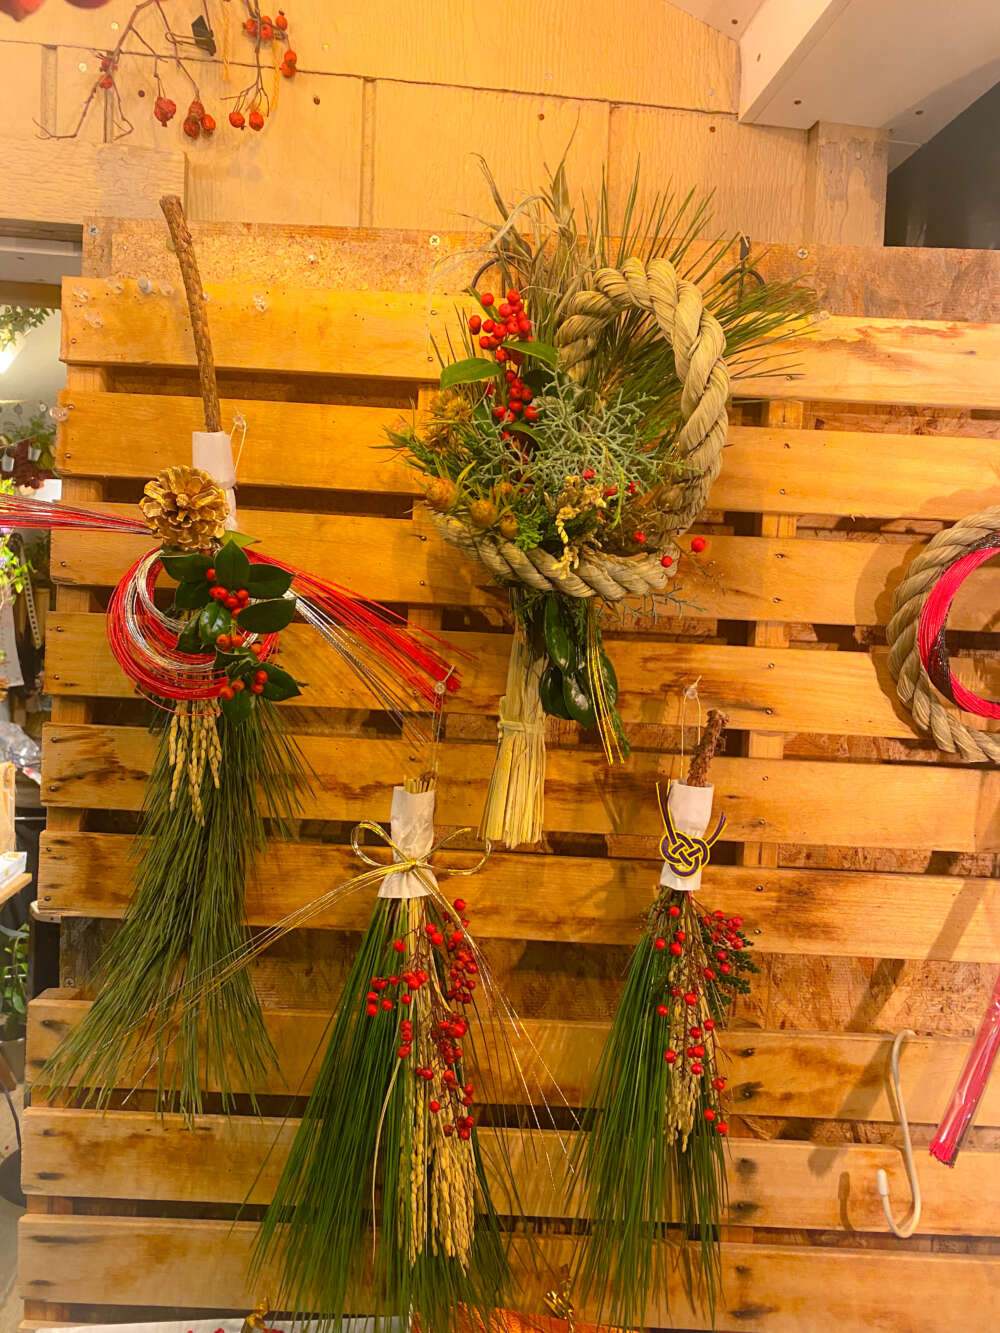 年末には当店オリジナルのお正月飾りが店頭に並びます。
生花を用いたお正月飾りは12月20日前後から販売予定です。